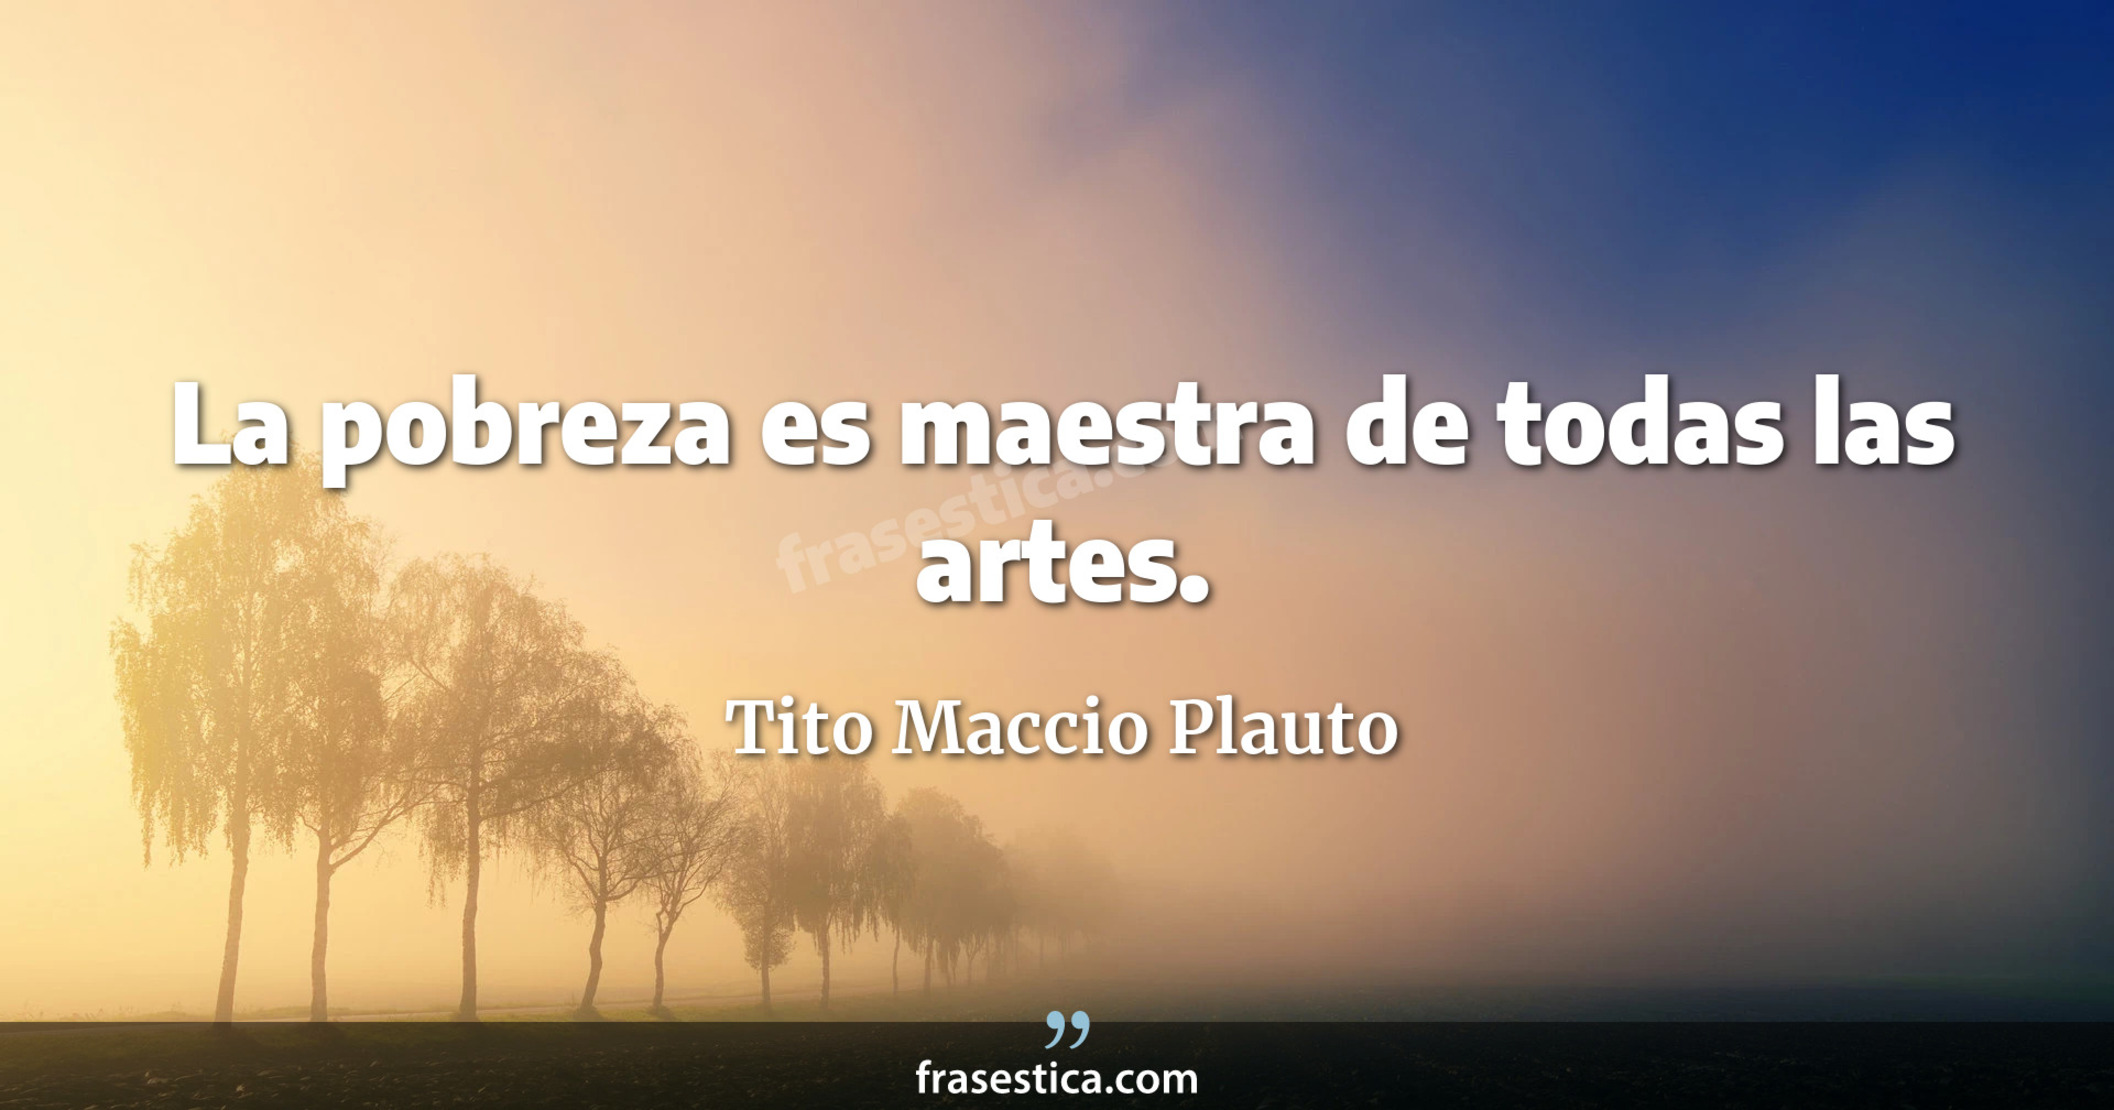 La pobreza es maestra de todas las artes. - Tito Maccio Plauto